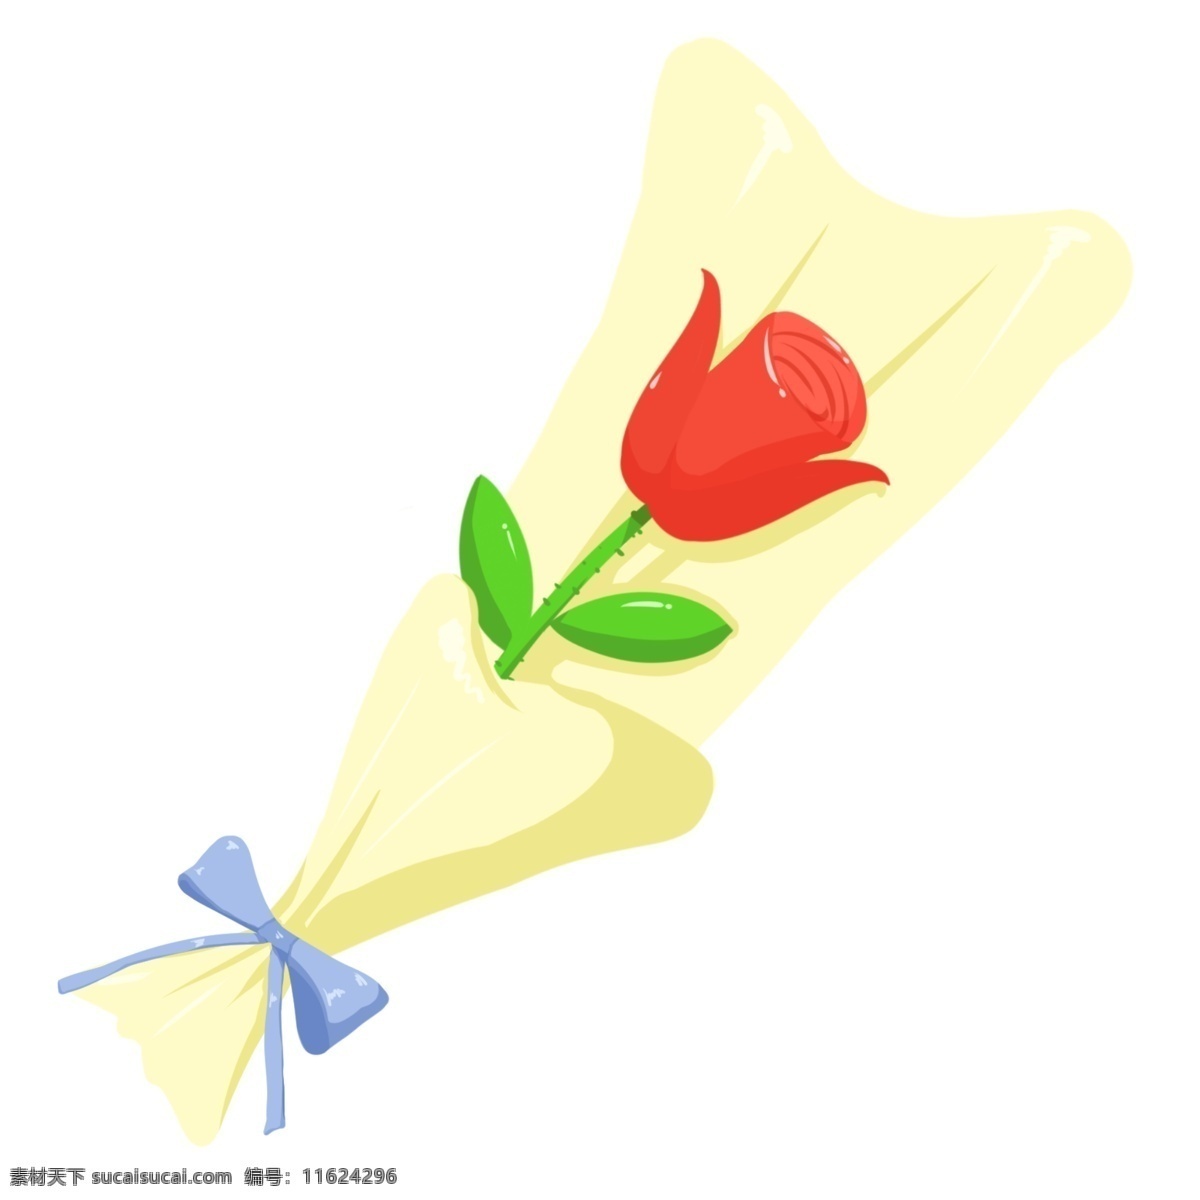 情人节 玫瑰花 插画 情人节玫瑰花 红色玫瑰花 鲜花 鲜艳 花朵 束 绿色的叶子 黄色包纸